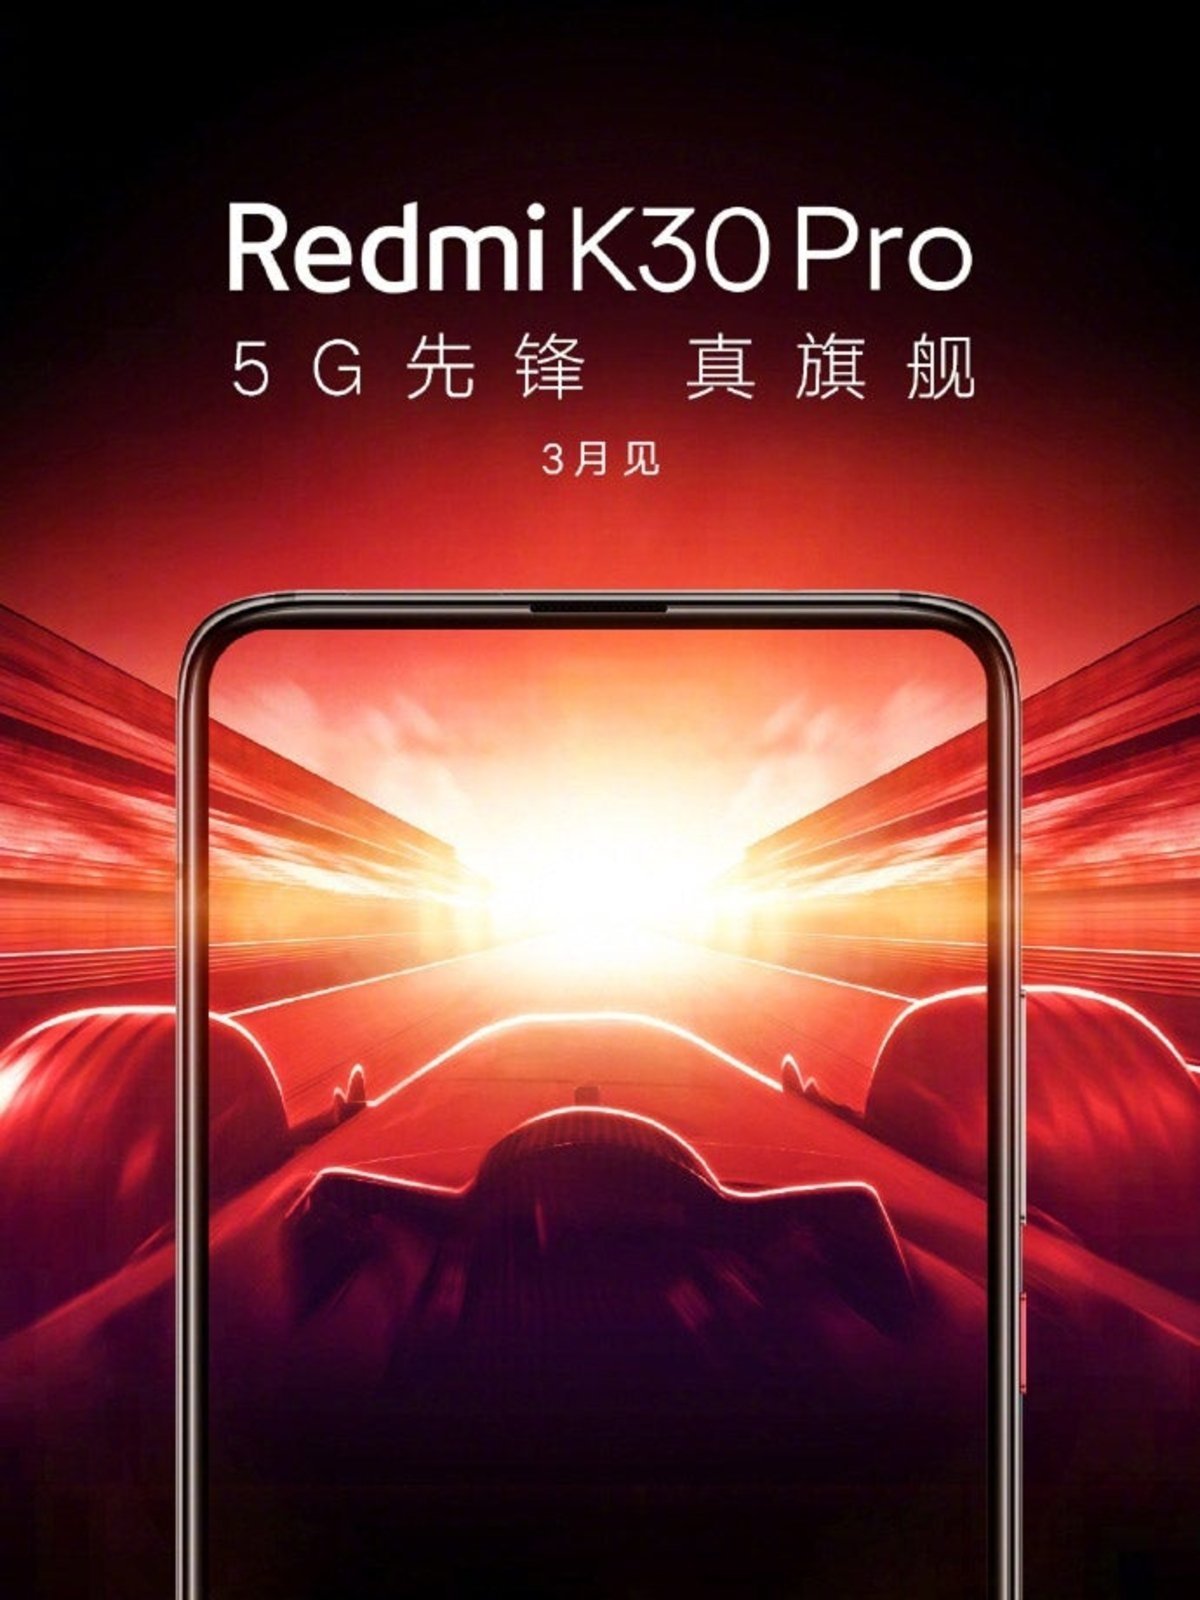 El Redmi K30 Pro poster